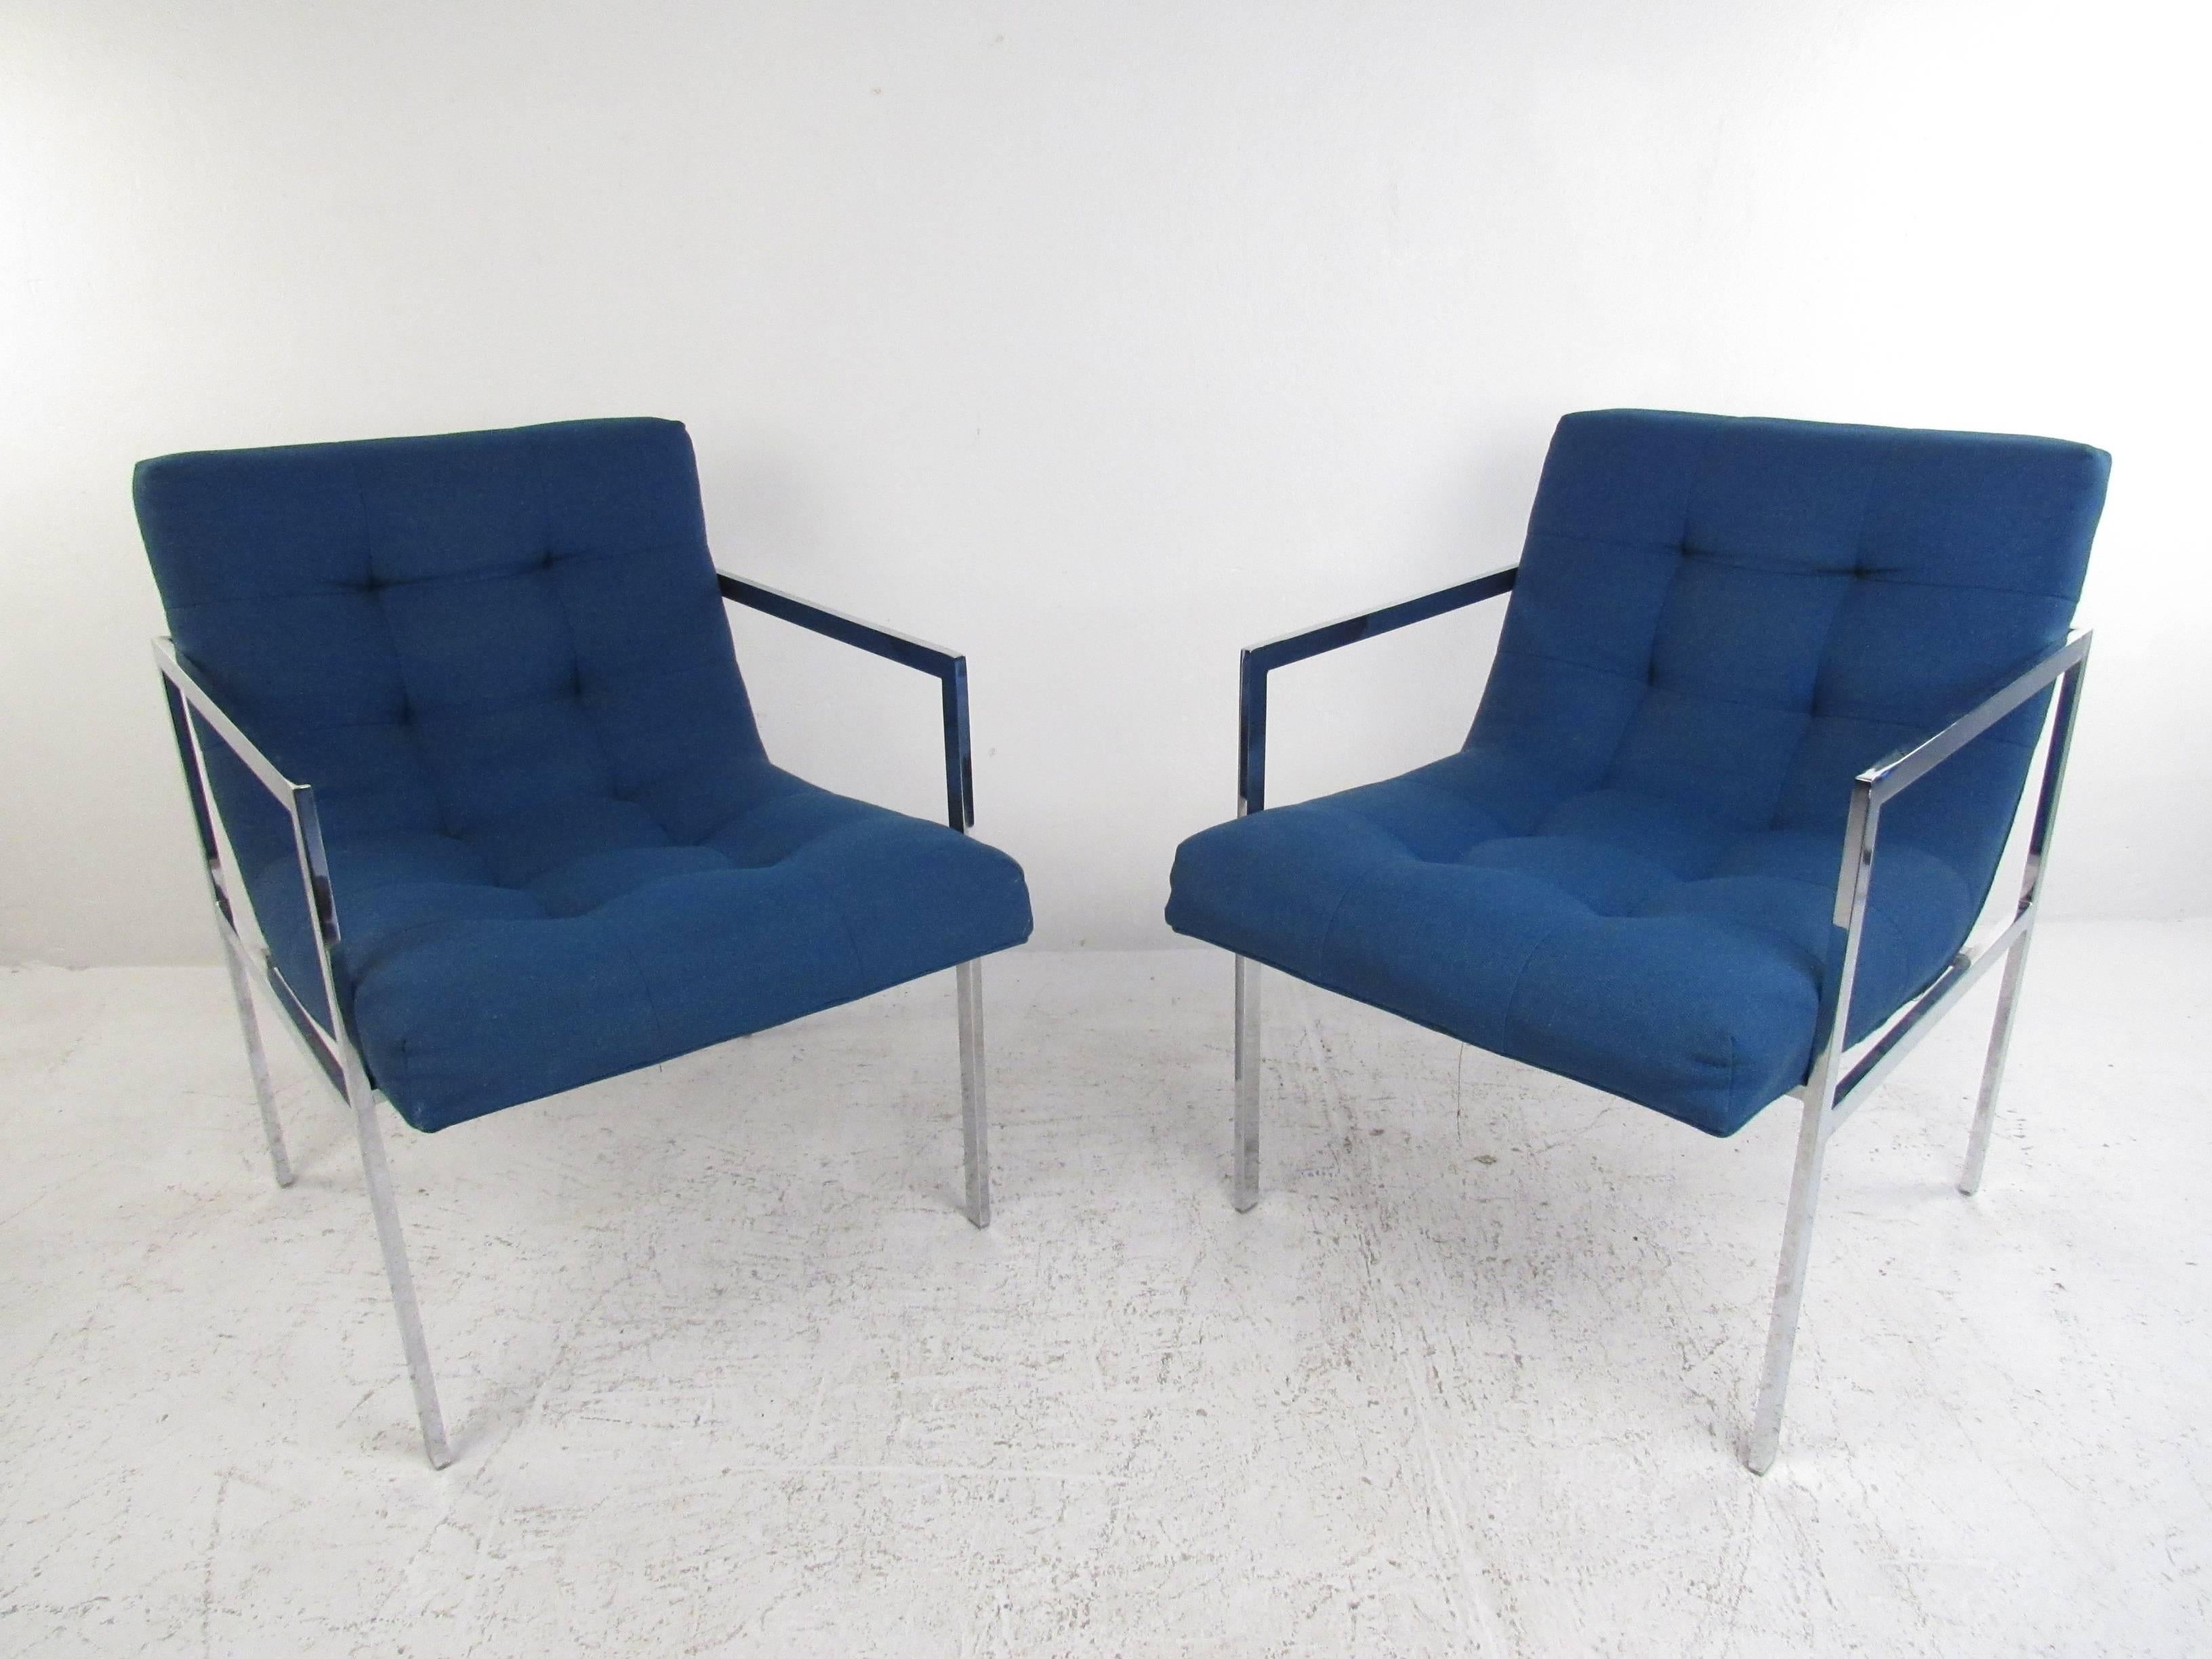 Dieses Paar Sessel mit verchromtem Gestell im Vintage-Stil ist mit Plüsch gepolstert und hat eine einzigartig gestaltete Rückenlehne für zusätzlichen Komfort. Die getufteten Knöpfe unterstreichen den einzigartigen Mid-Century-Stil des Paares,